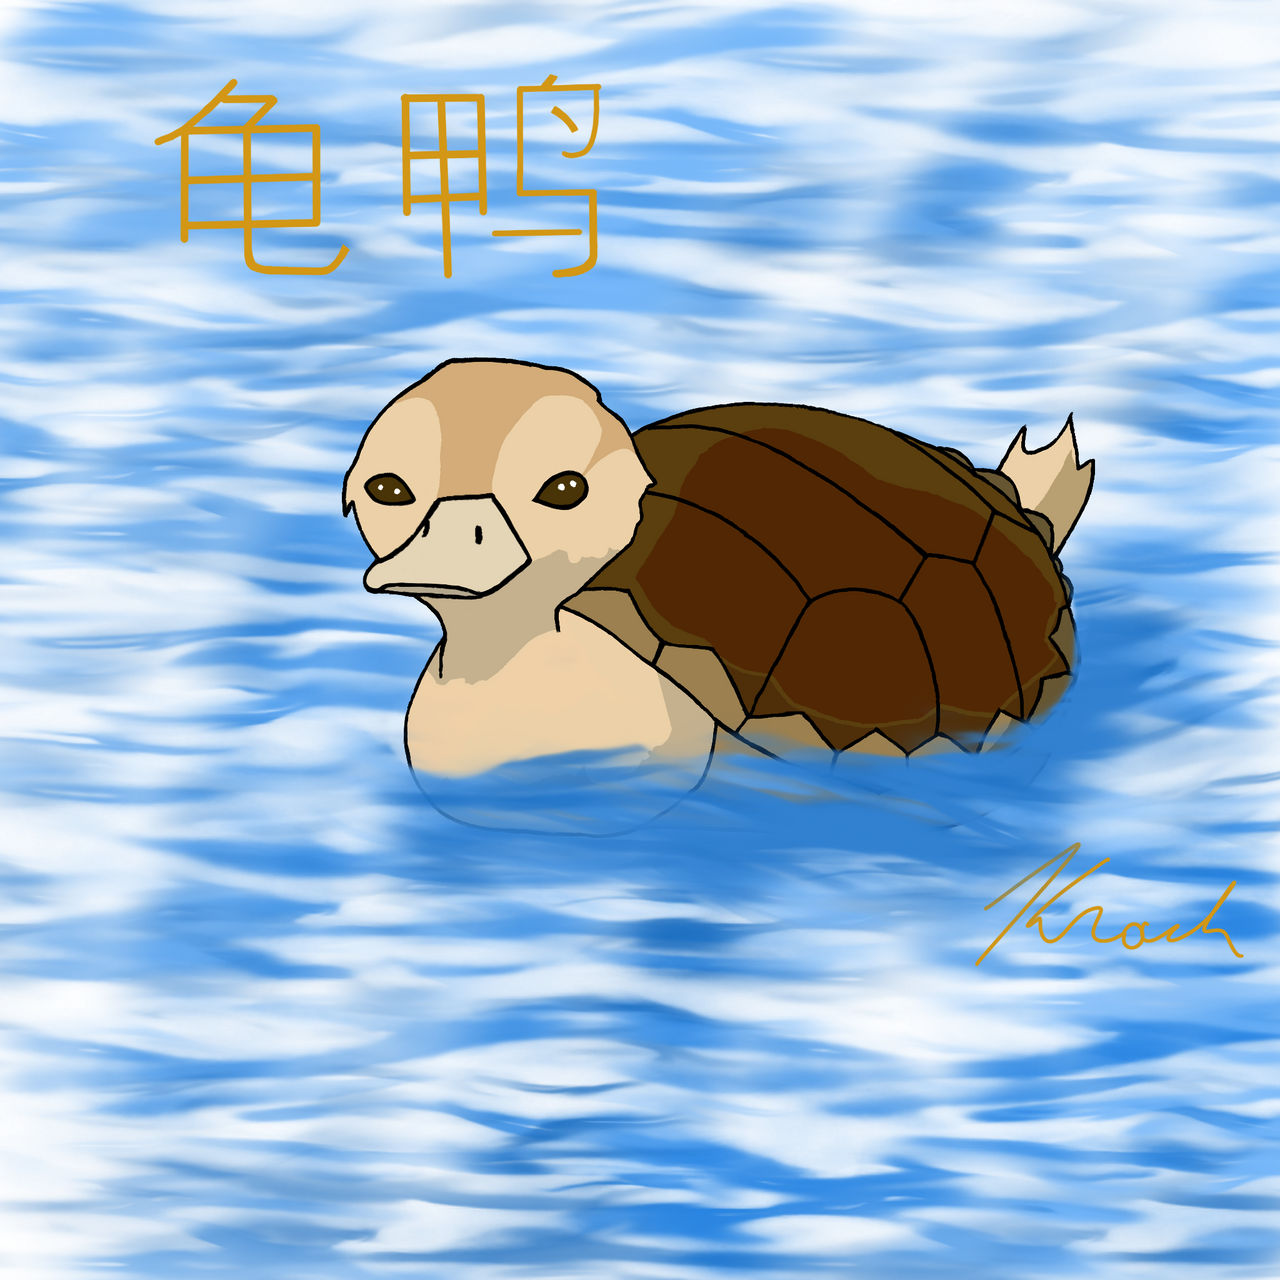 Turtle Duck (Avatar)  Animated Steam Artwork by DryreL on DeviantArt